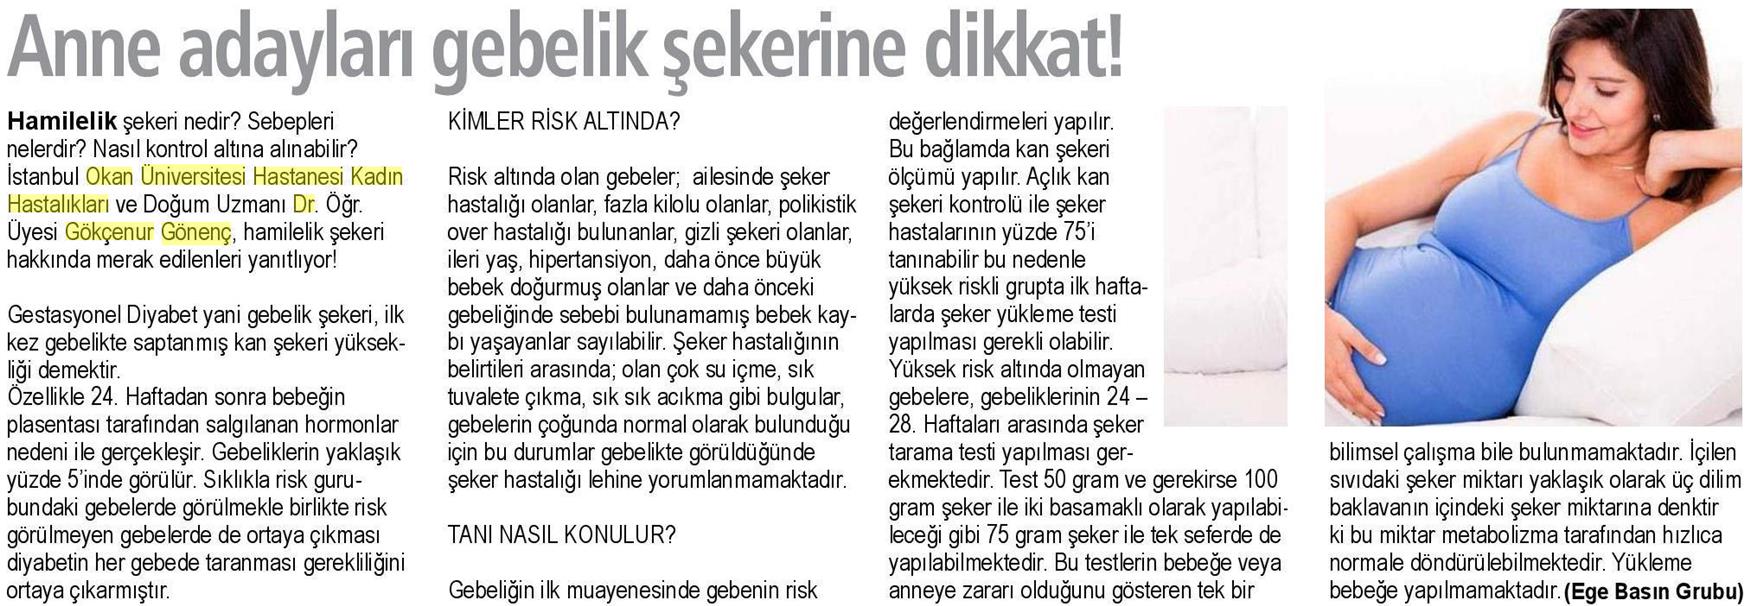 20.03.2019 Sağlık Gazetesi ANNE ADAYLARI GEBELİK ŞEKERİNE DİKKAT!